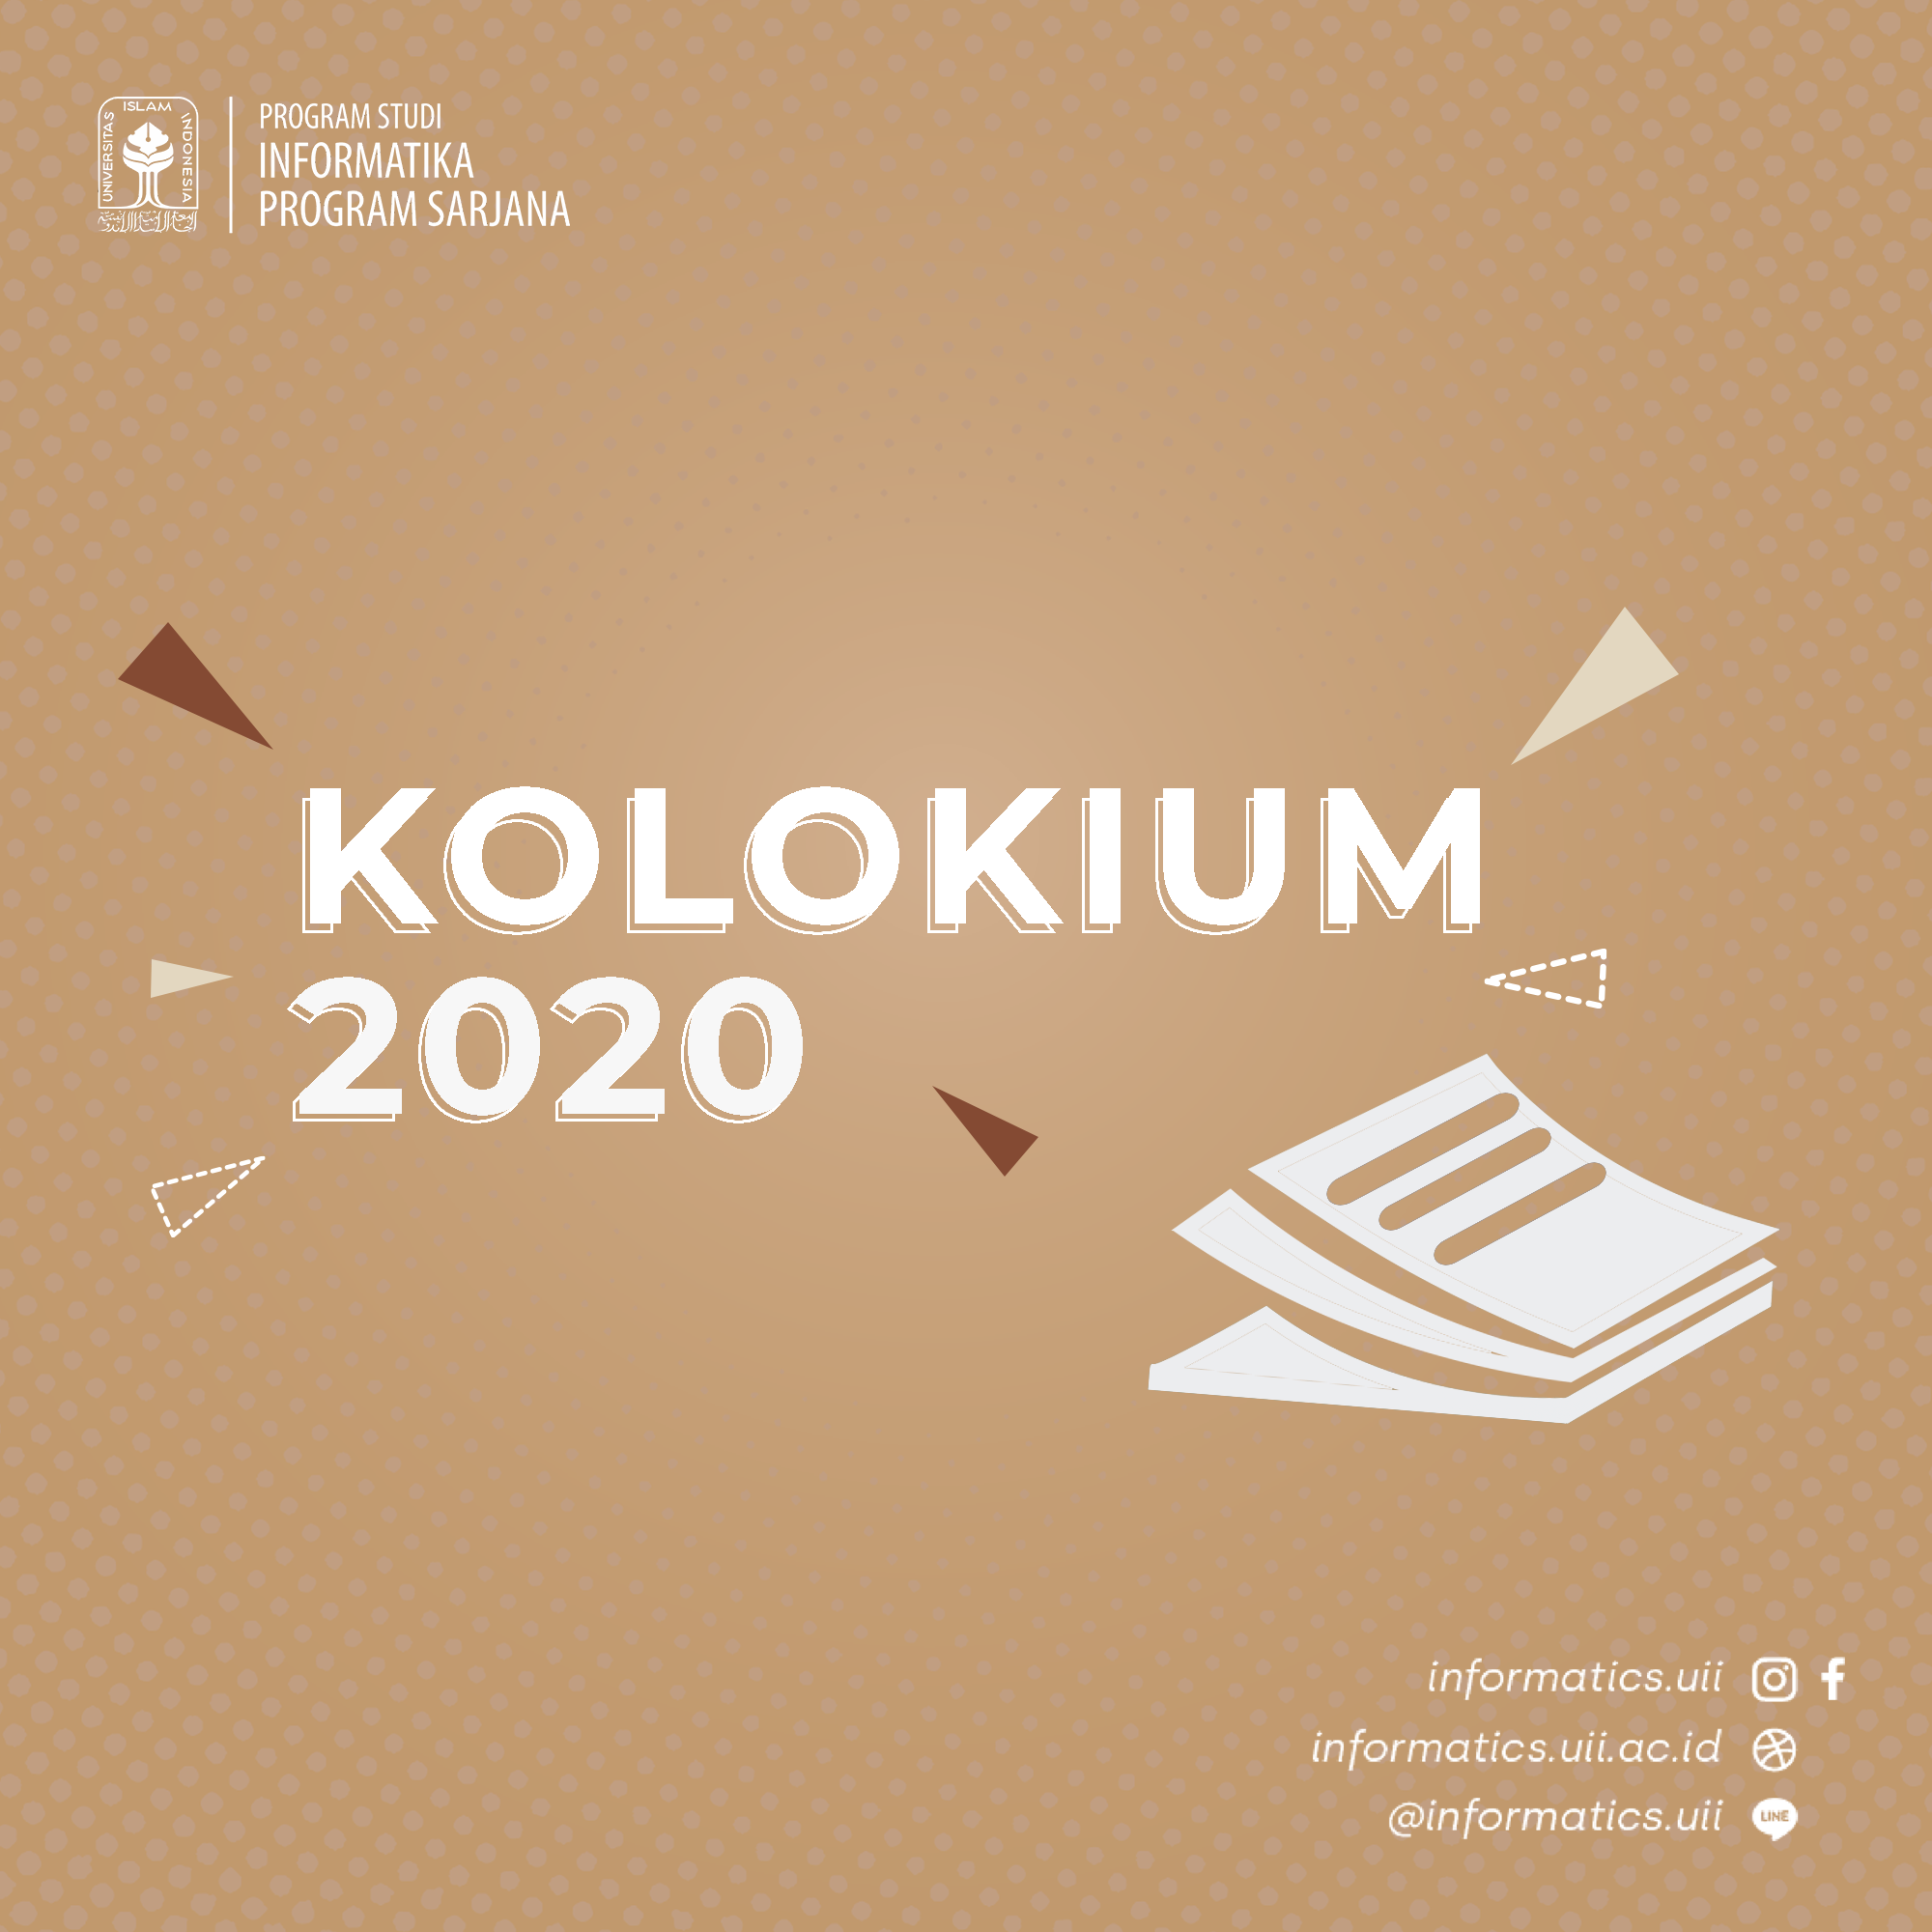 Kolokium 2020